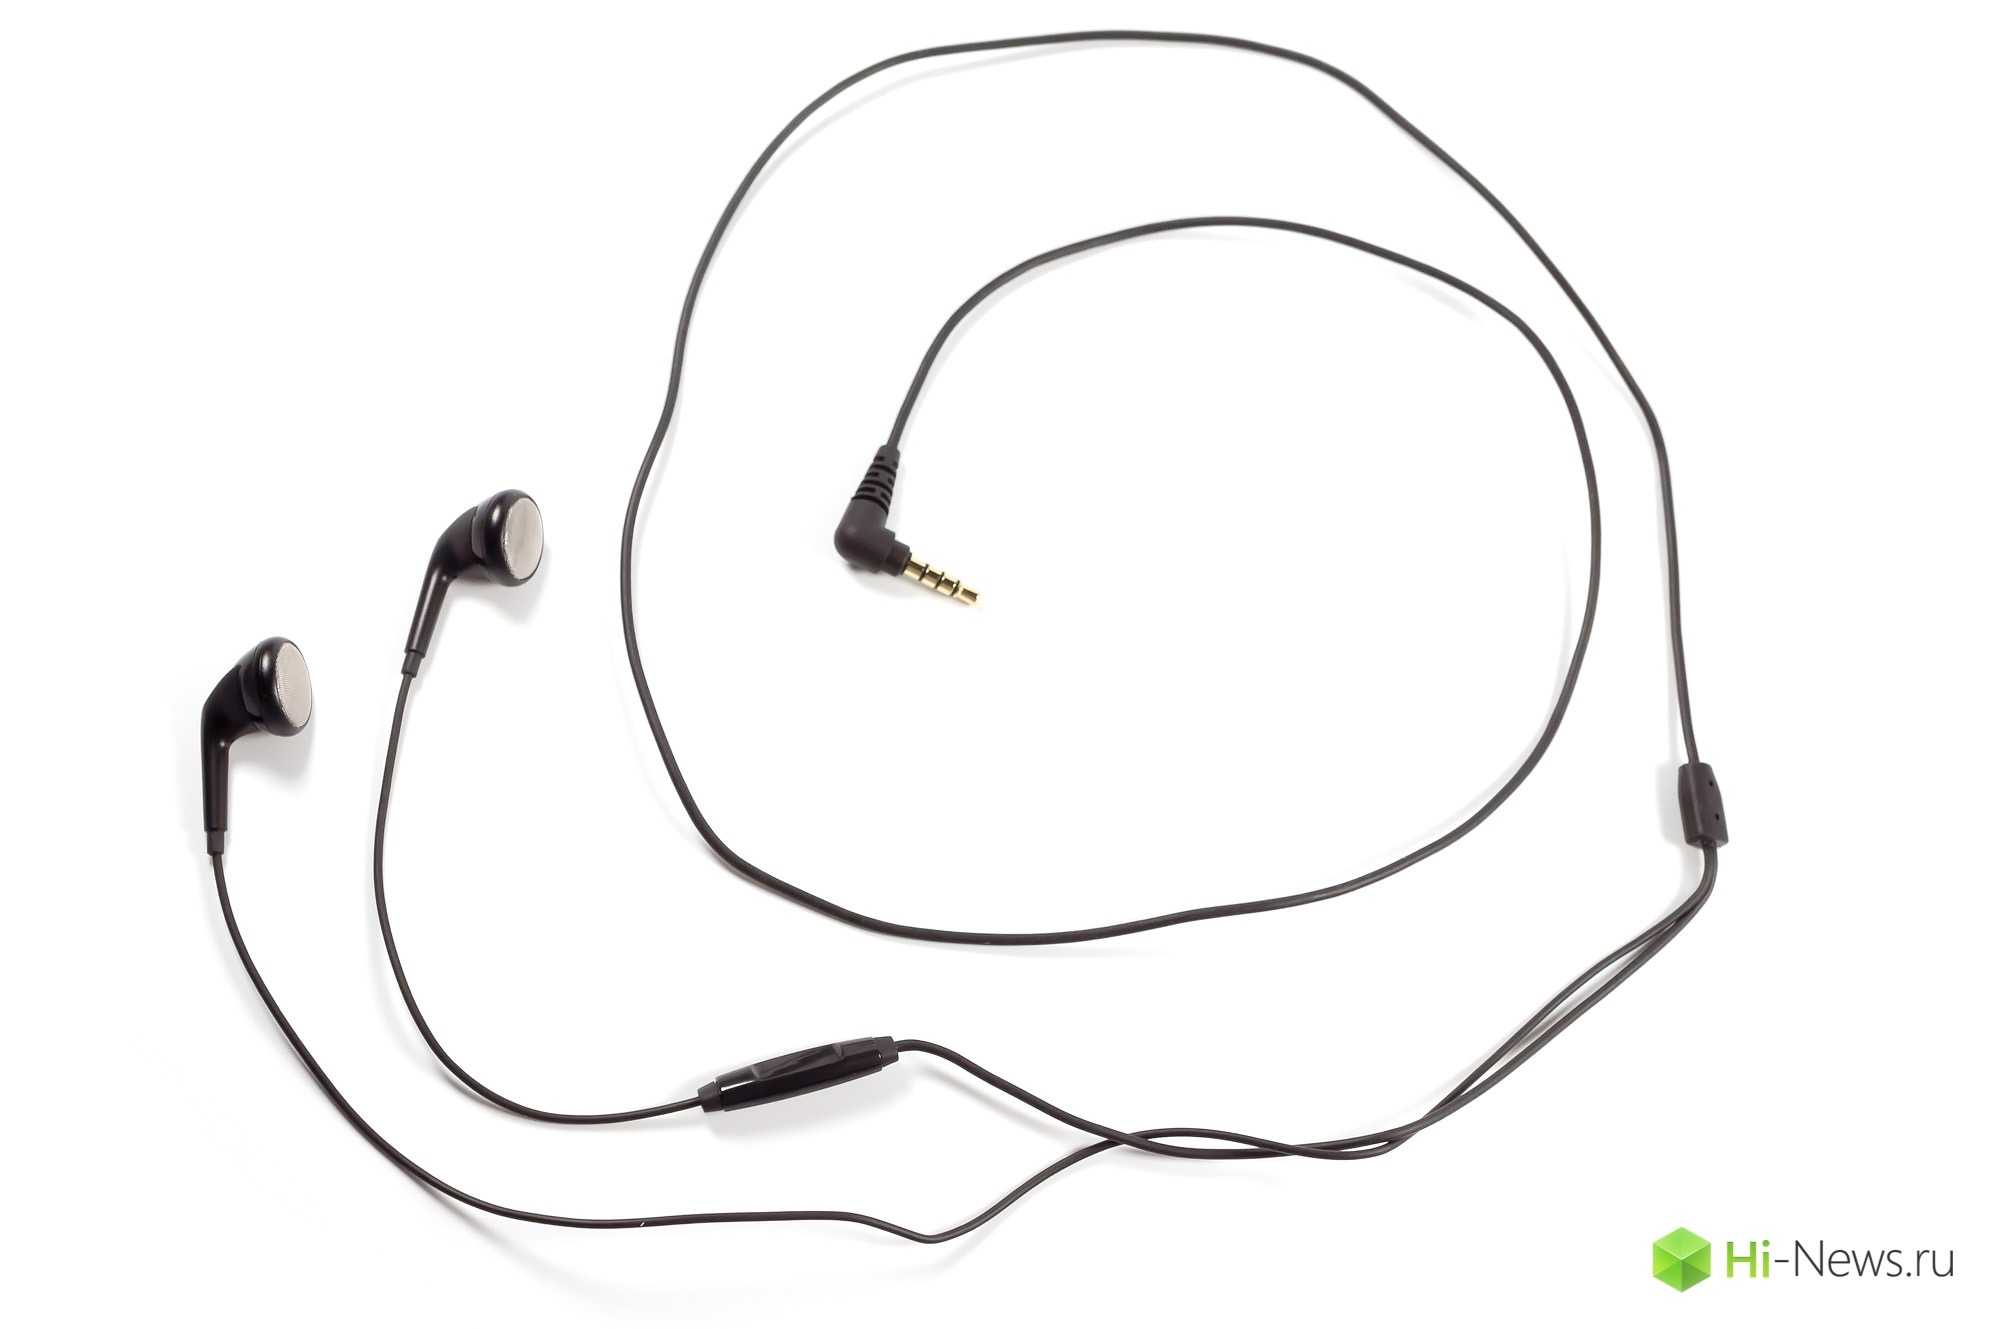 Обзор наушников tws stereo earbuds: первый гаджет honor choice